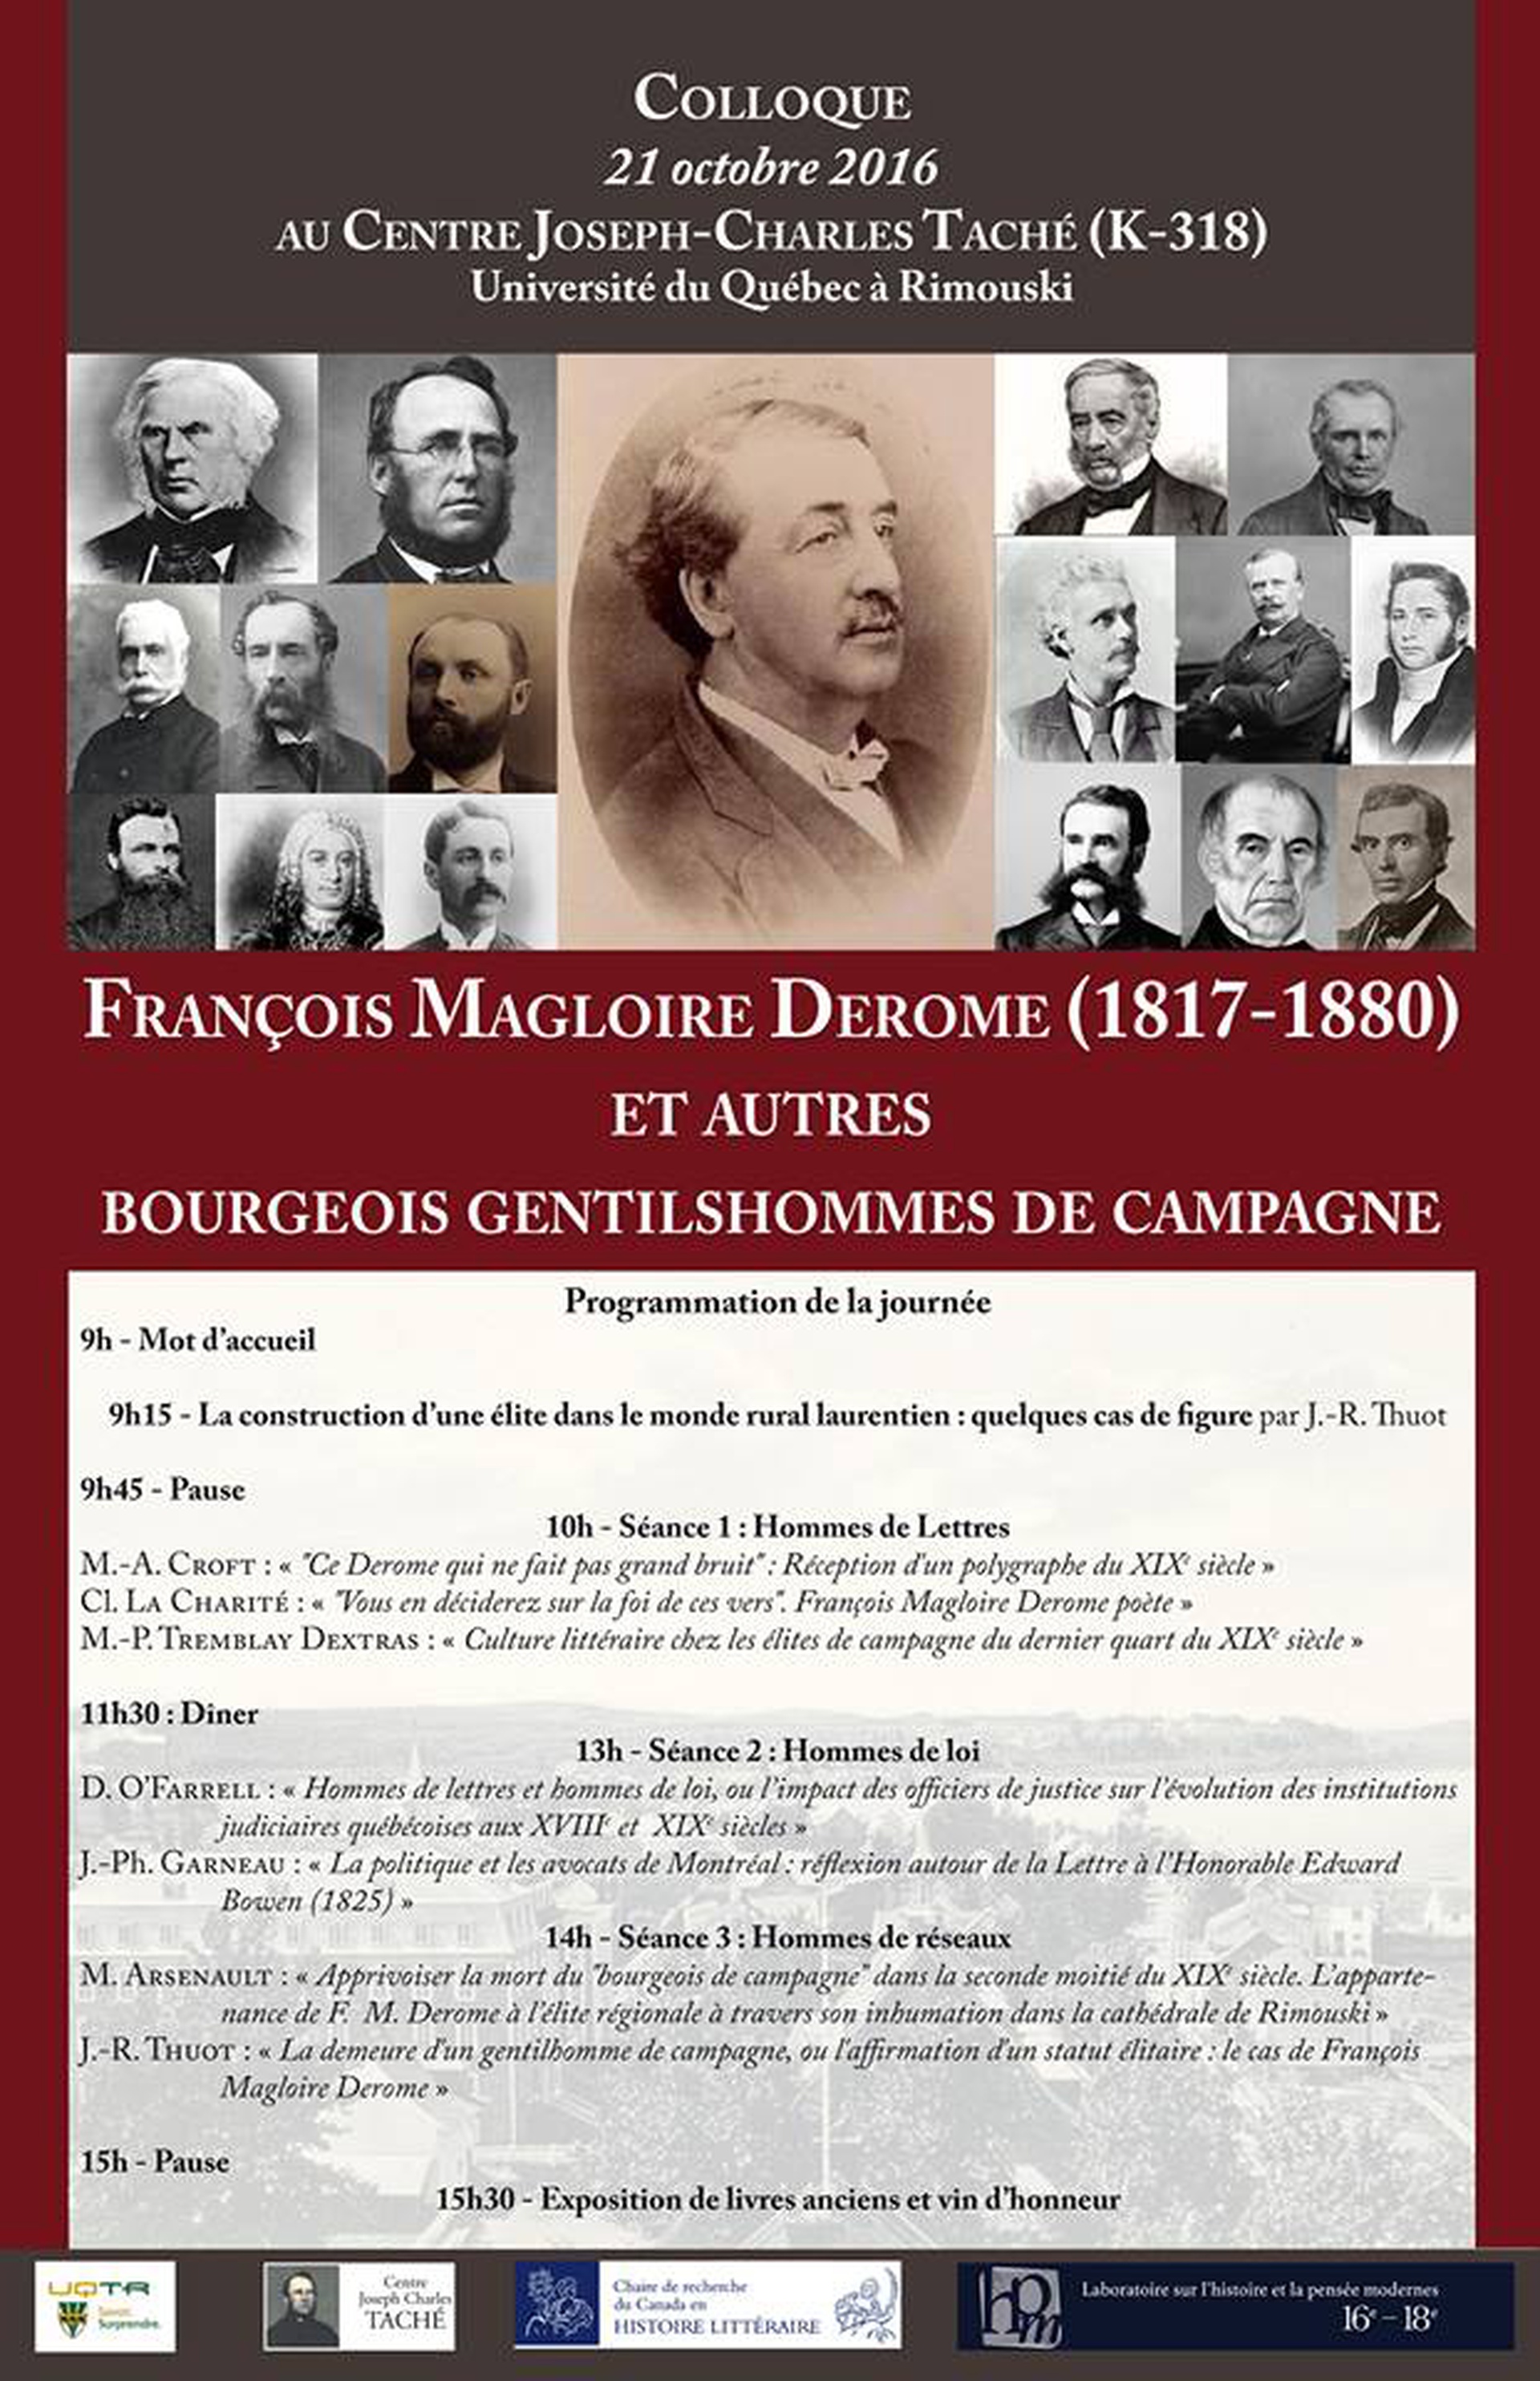 François-Magloire Derome (1817-1880) et autres bourgeois gentilshommes de campagne